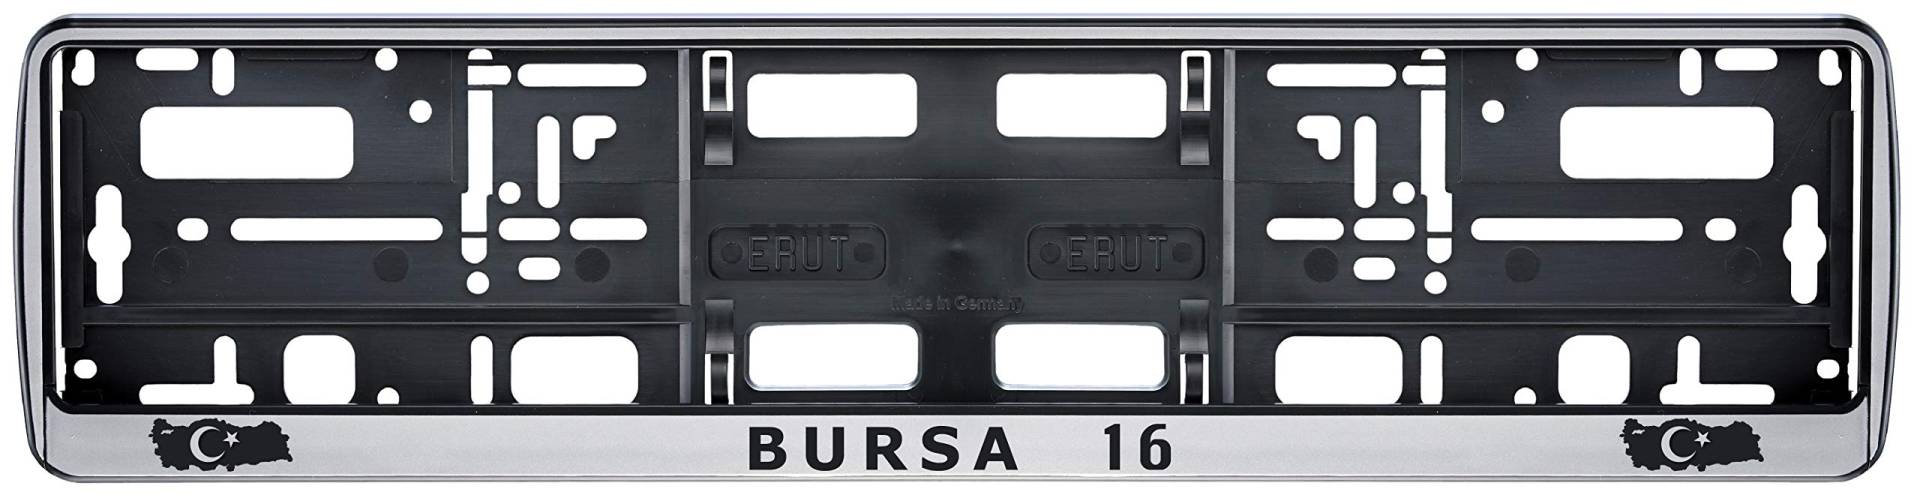 Auto Kennzeichenhalter in der Farbe Silber/Schwarz Nummernschildhalterung Auto, Nummernschildhalter Türkei Flagge 16 Bursa 2 Stück von Aina